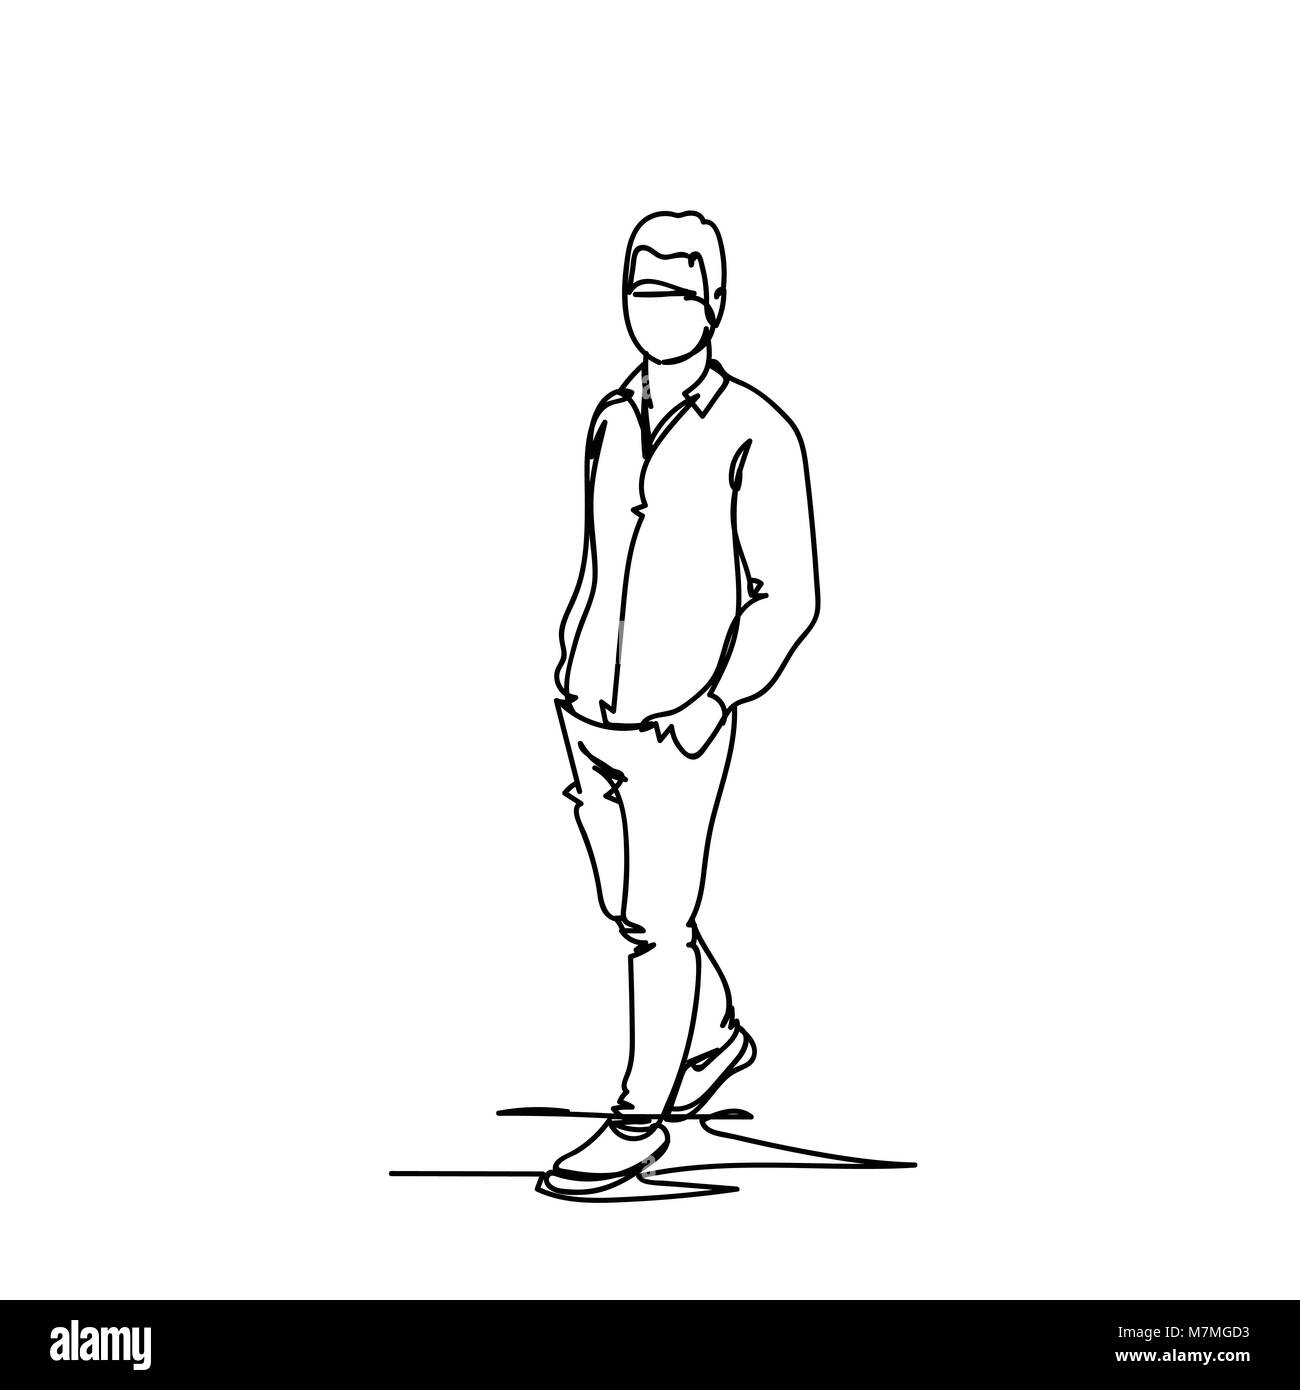 Männliche Silhouette Skizze, Hand gezeichnet Doodle Business Mann isoliert  auf weißem Hintergrund Stock-Vektorgrafik - Alamy